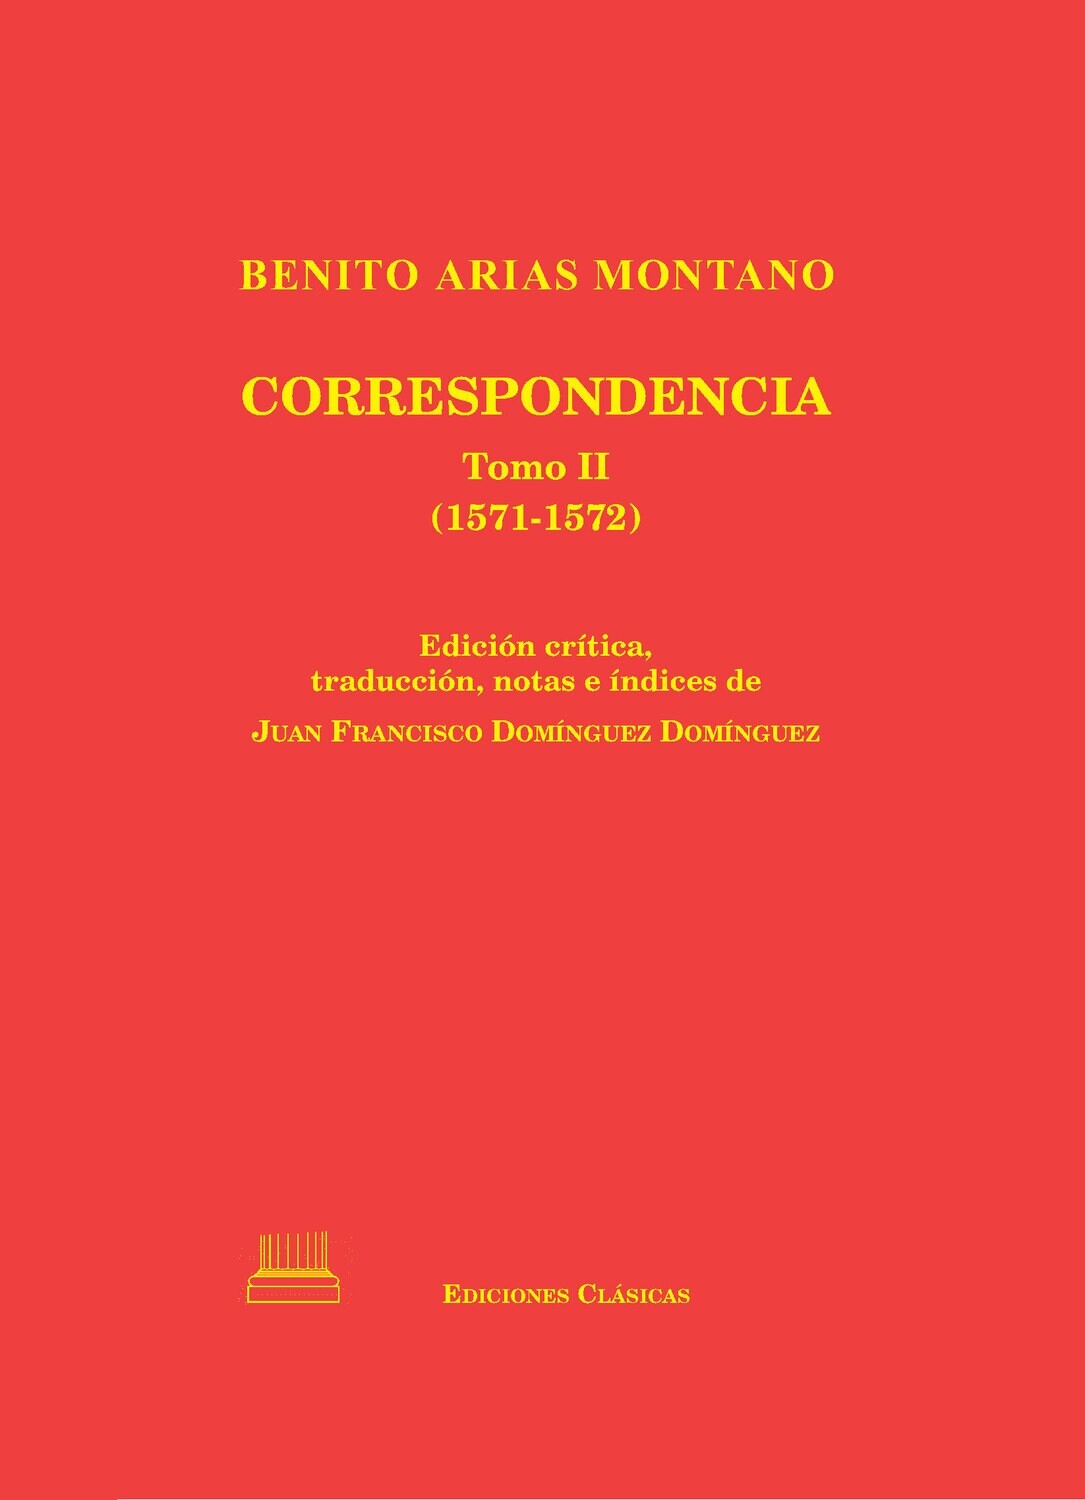 CORRESPONDENCIA DE BENITO ARIAS MONTANO - Tomo II (1571-1572)